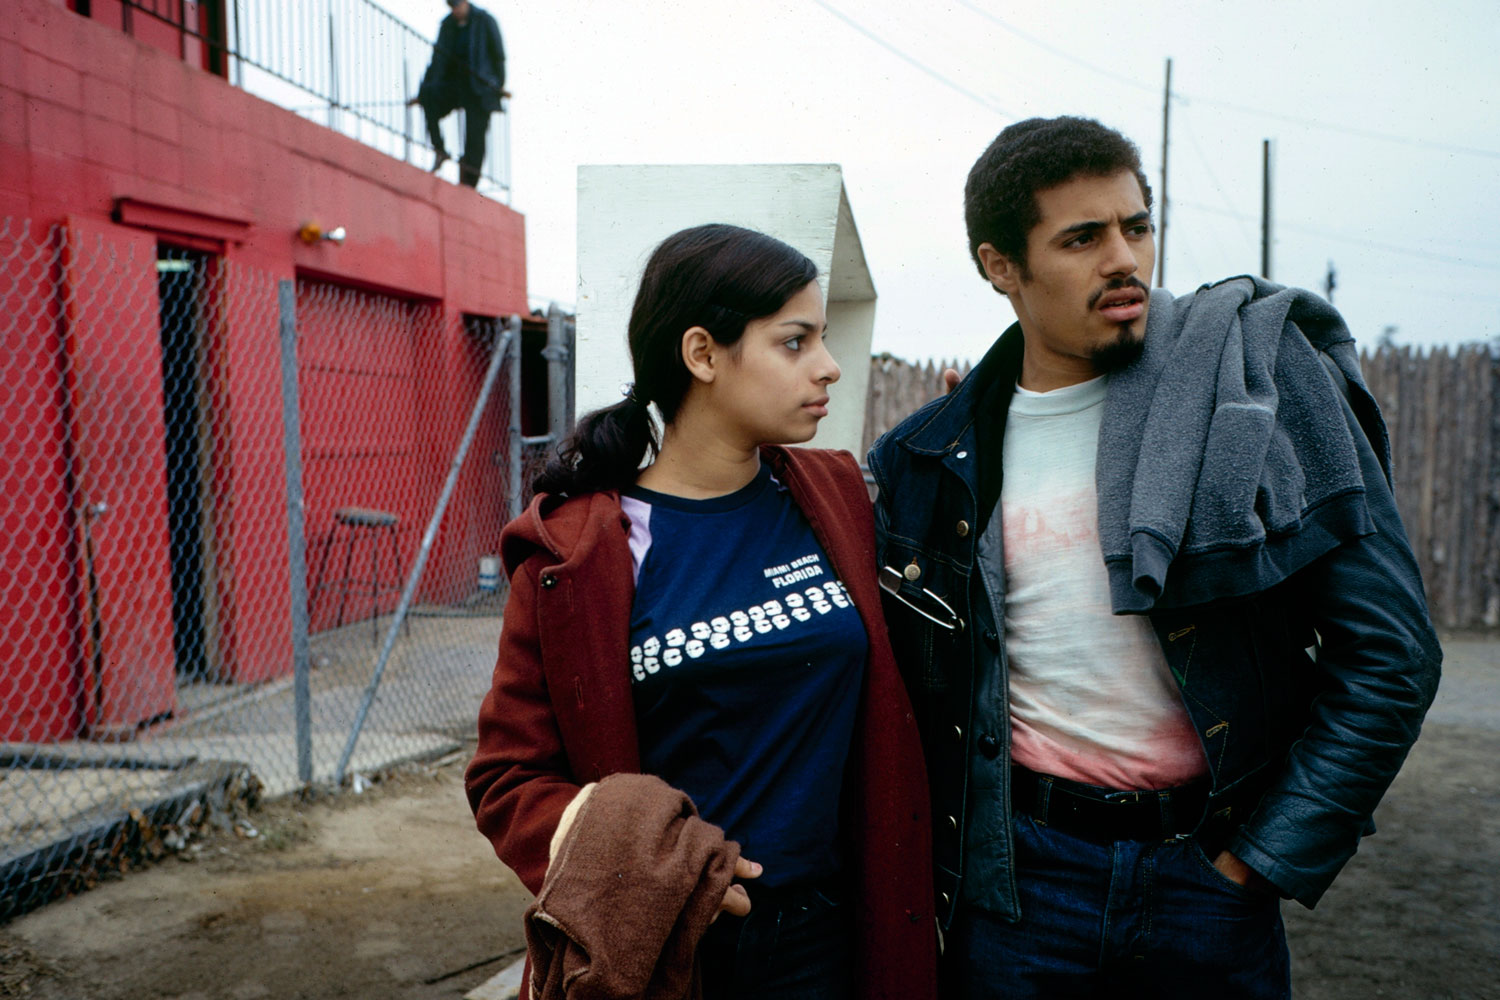 Eddie Cuevas, president of the Reapers street gang, with his girlfriend Yvette, South Bronx, 1972.